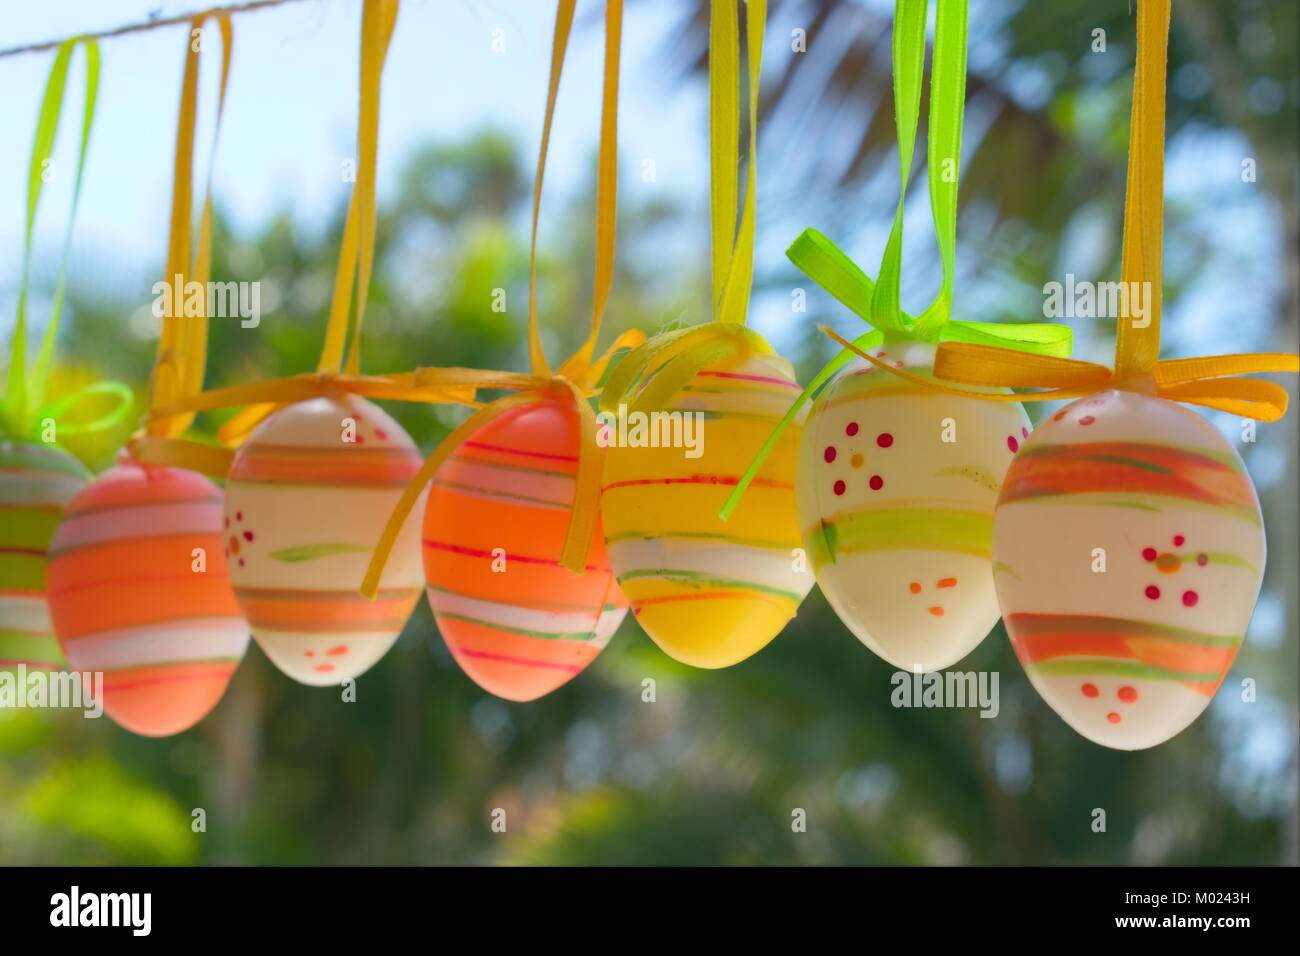 Décoration de Pâques, les oeufs de Pâques colorés accrochés sur une corde dans un jardin tropical. Banque D'Images